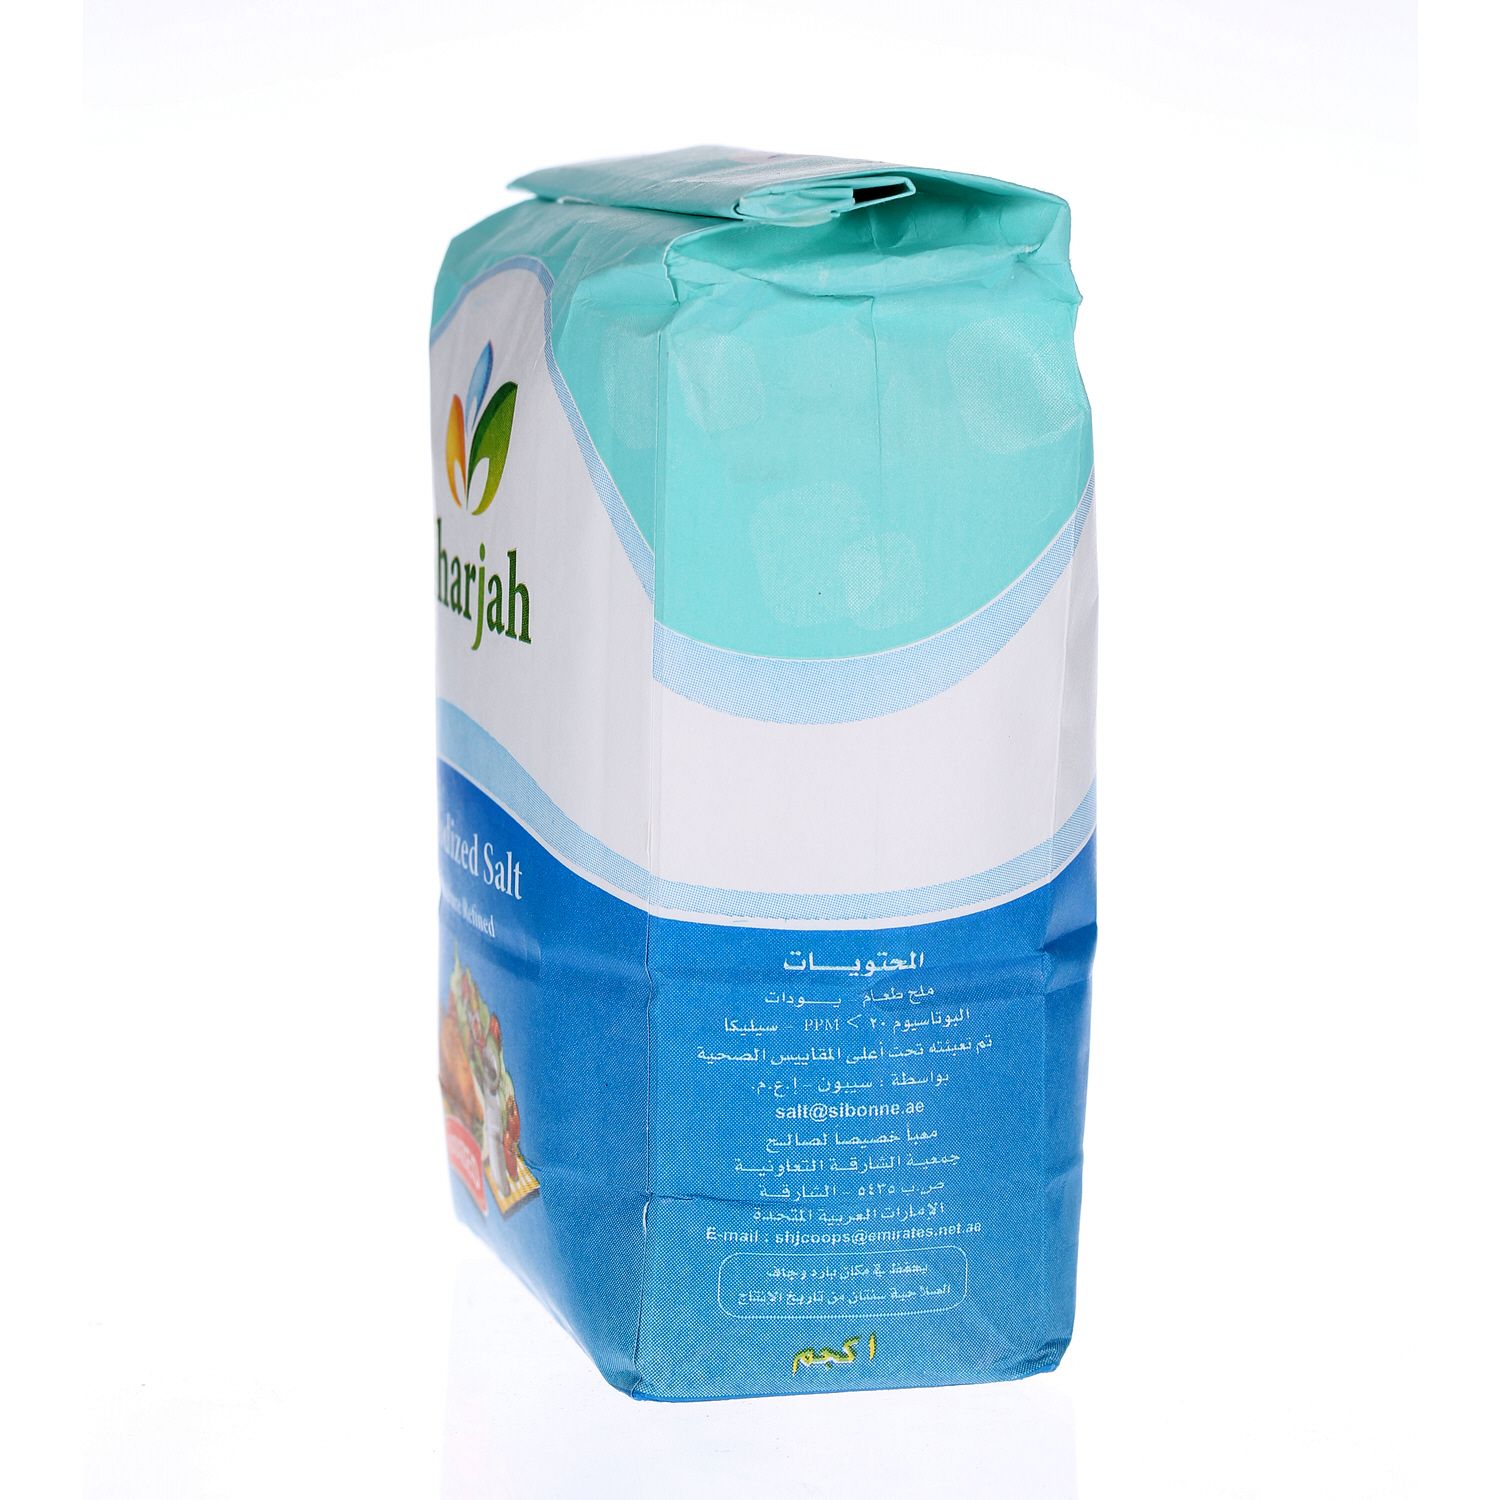 Sharjah Coop Iodized Salt Packet 1 Kg